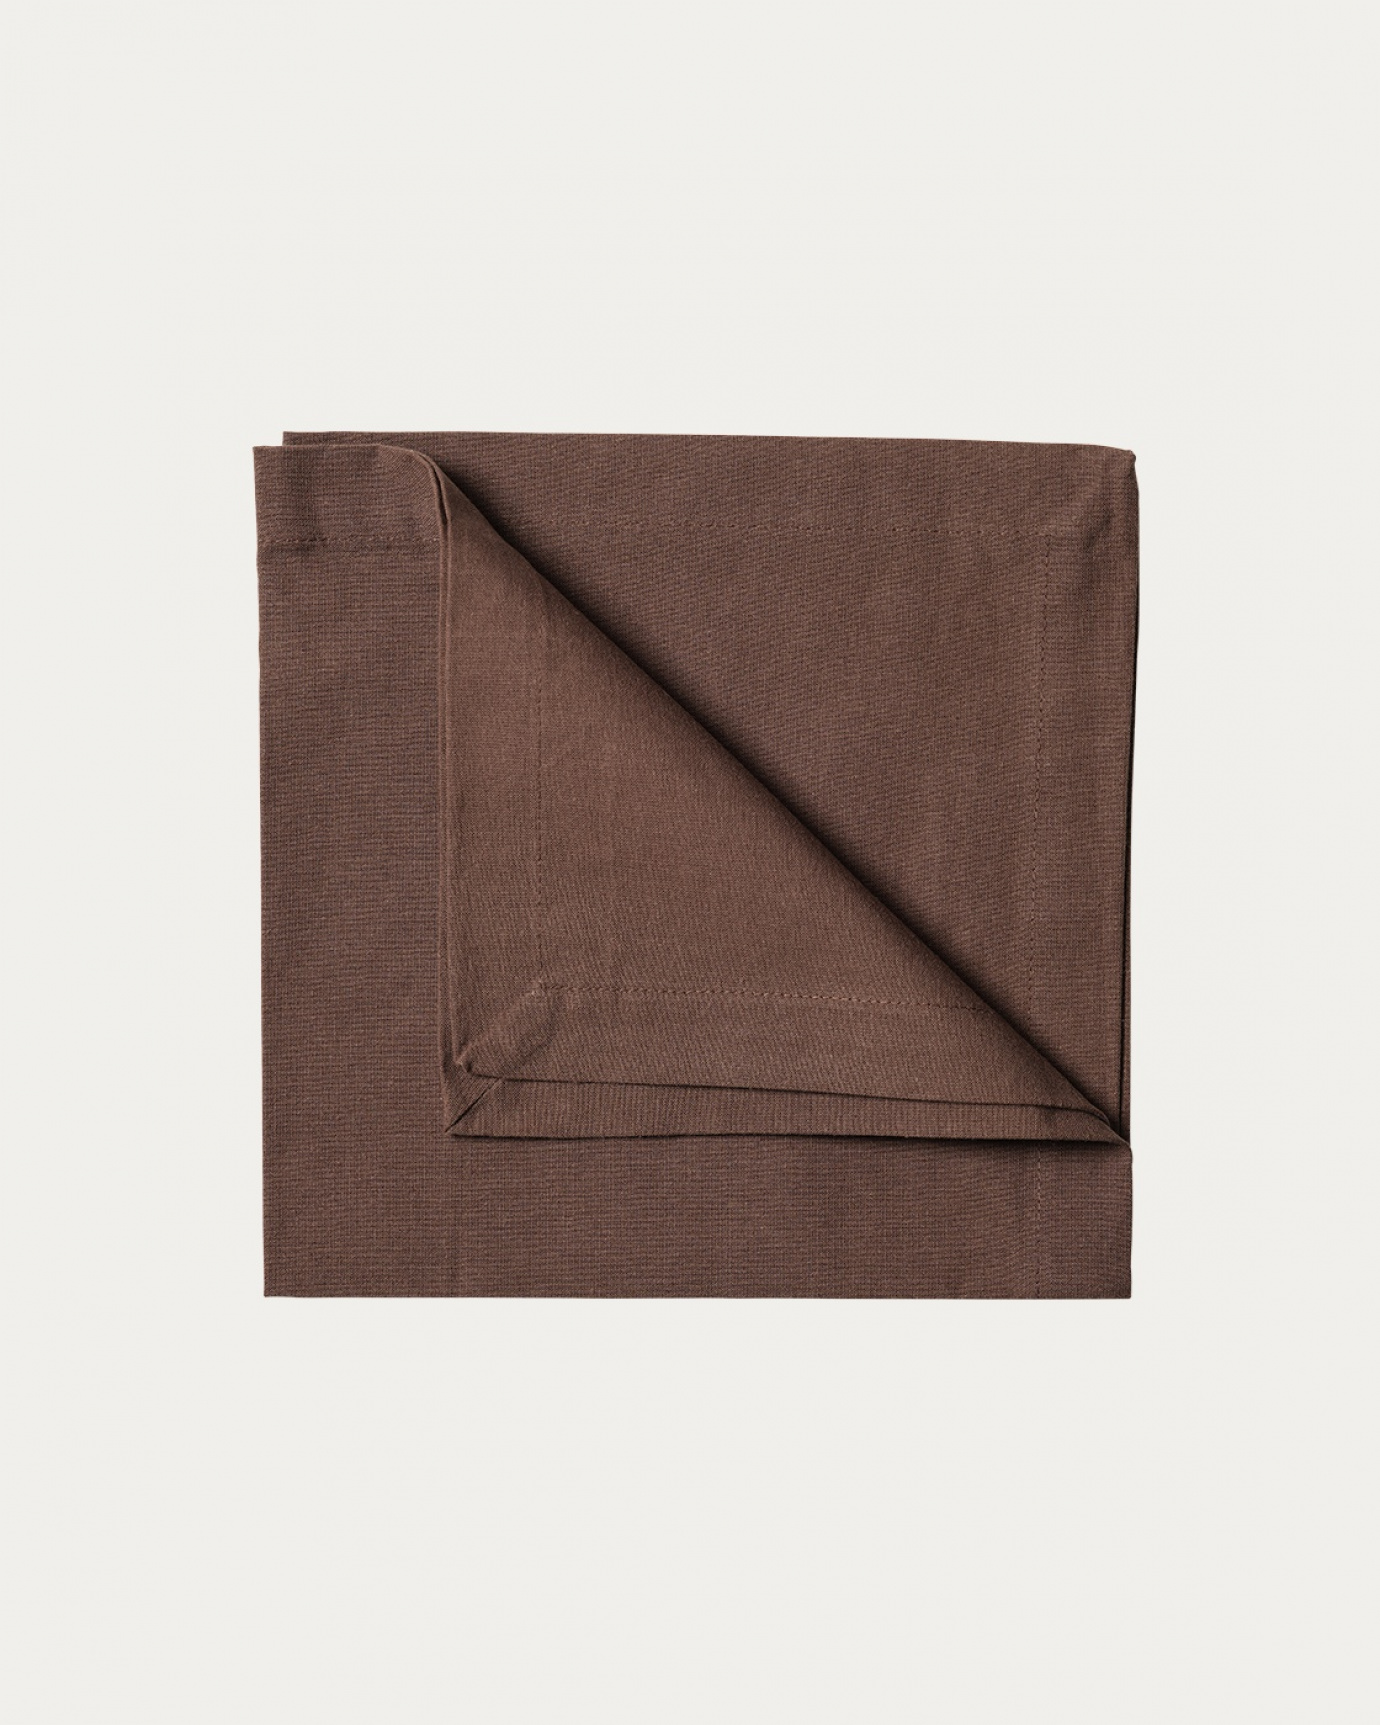 Image du produit serviette de table ROBERT marron ours en coton doux de LINUM DESIGN. Taille 45 x 45 cm et vendu en lot de 4.